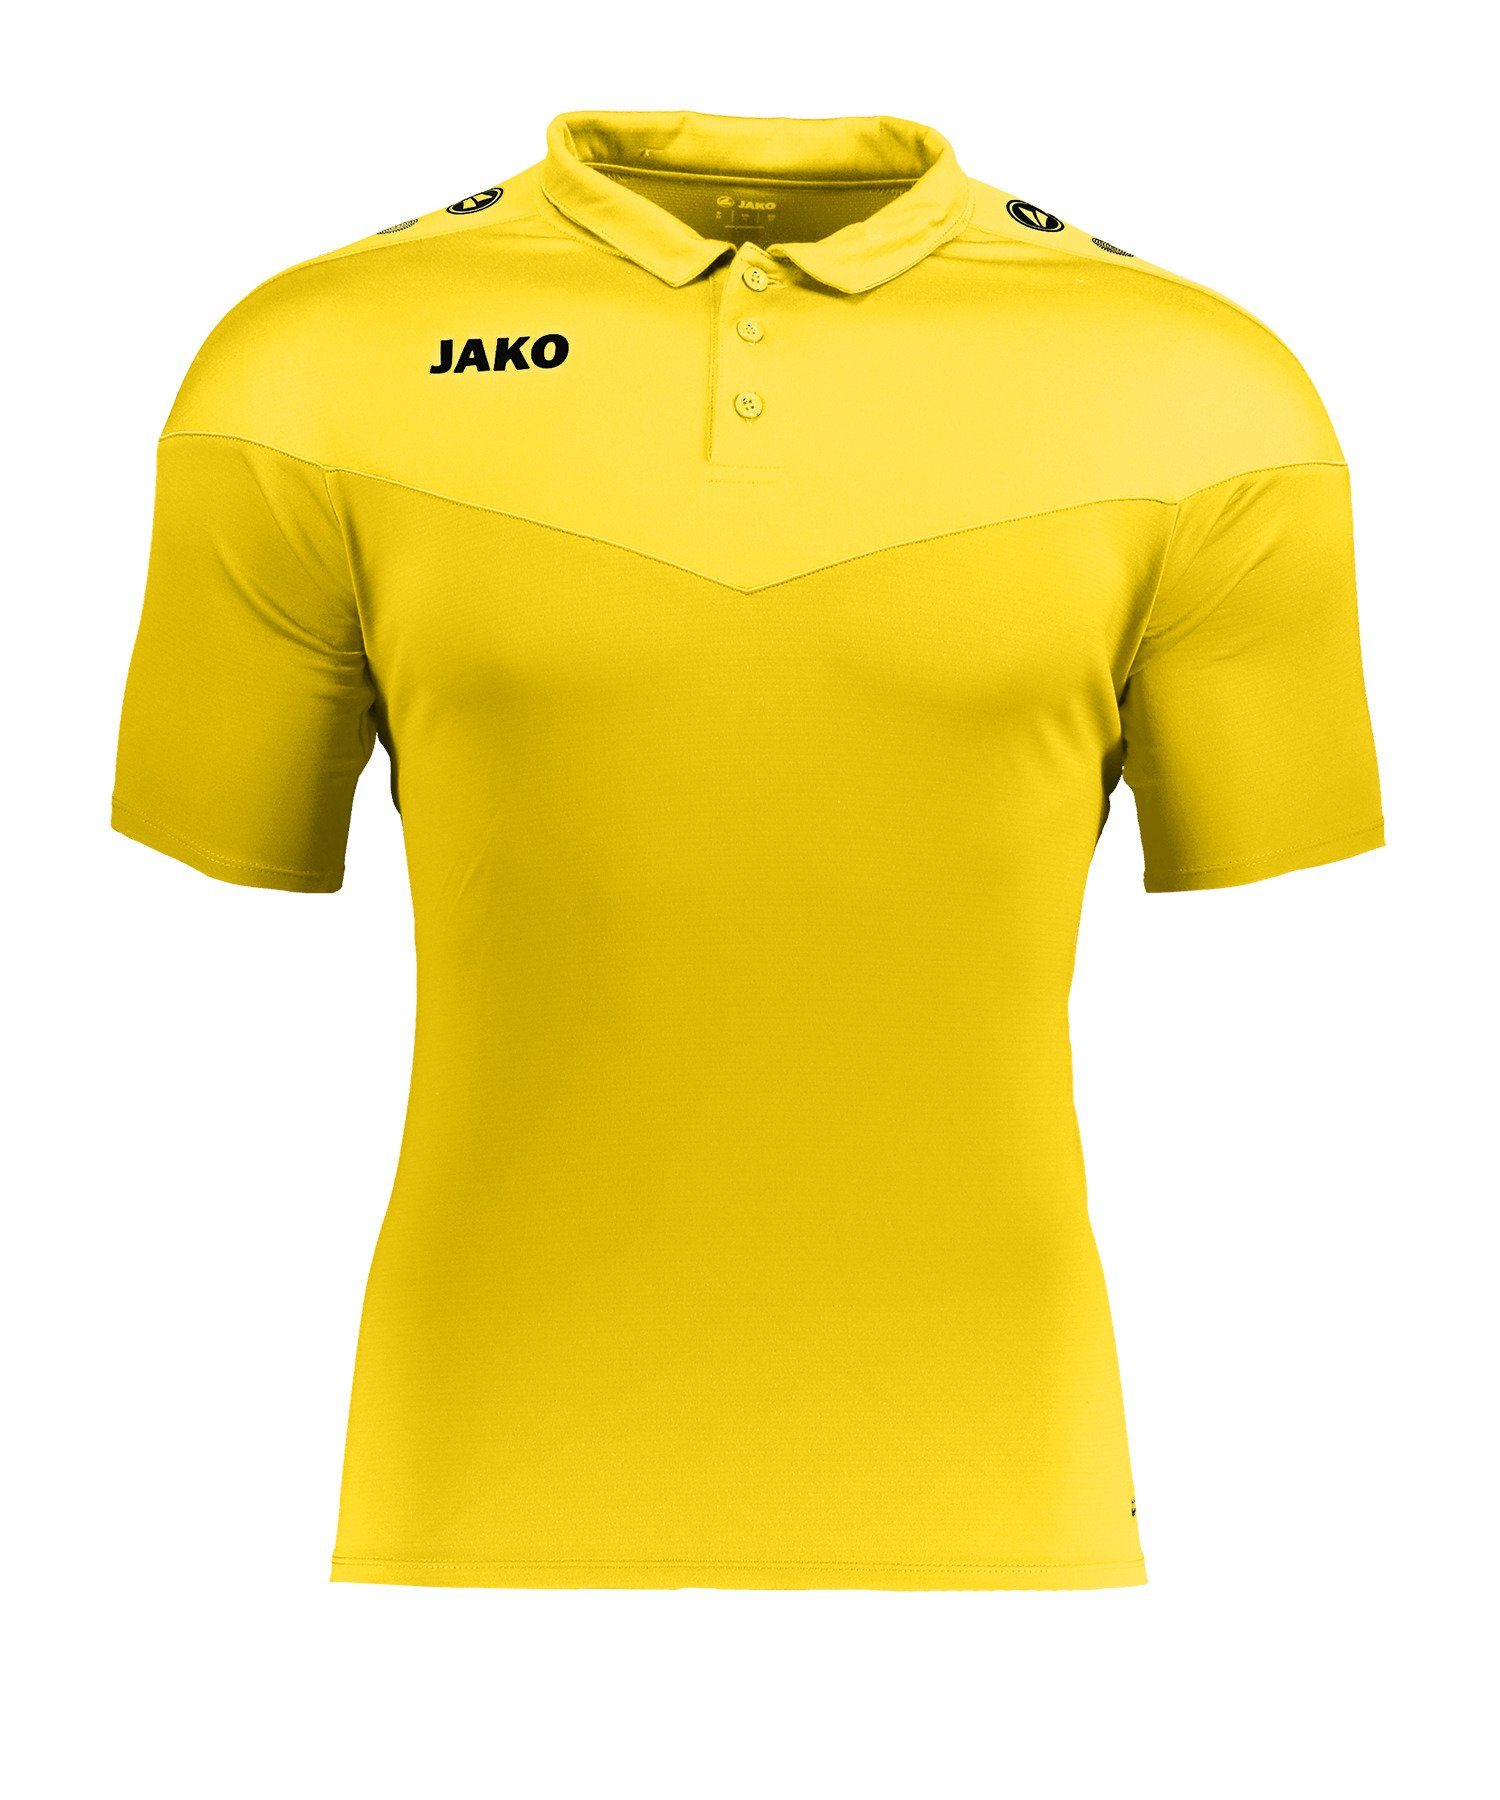 2.0 Poloshirt Jako default gelb Poloshirt Damen Champ